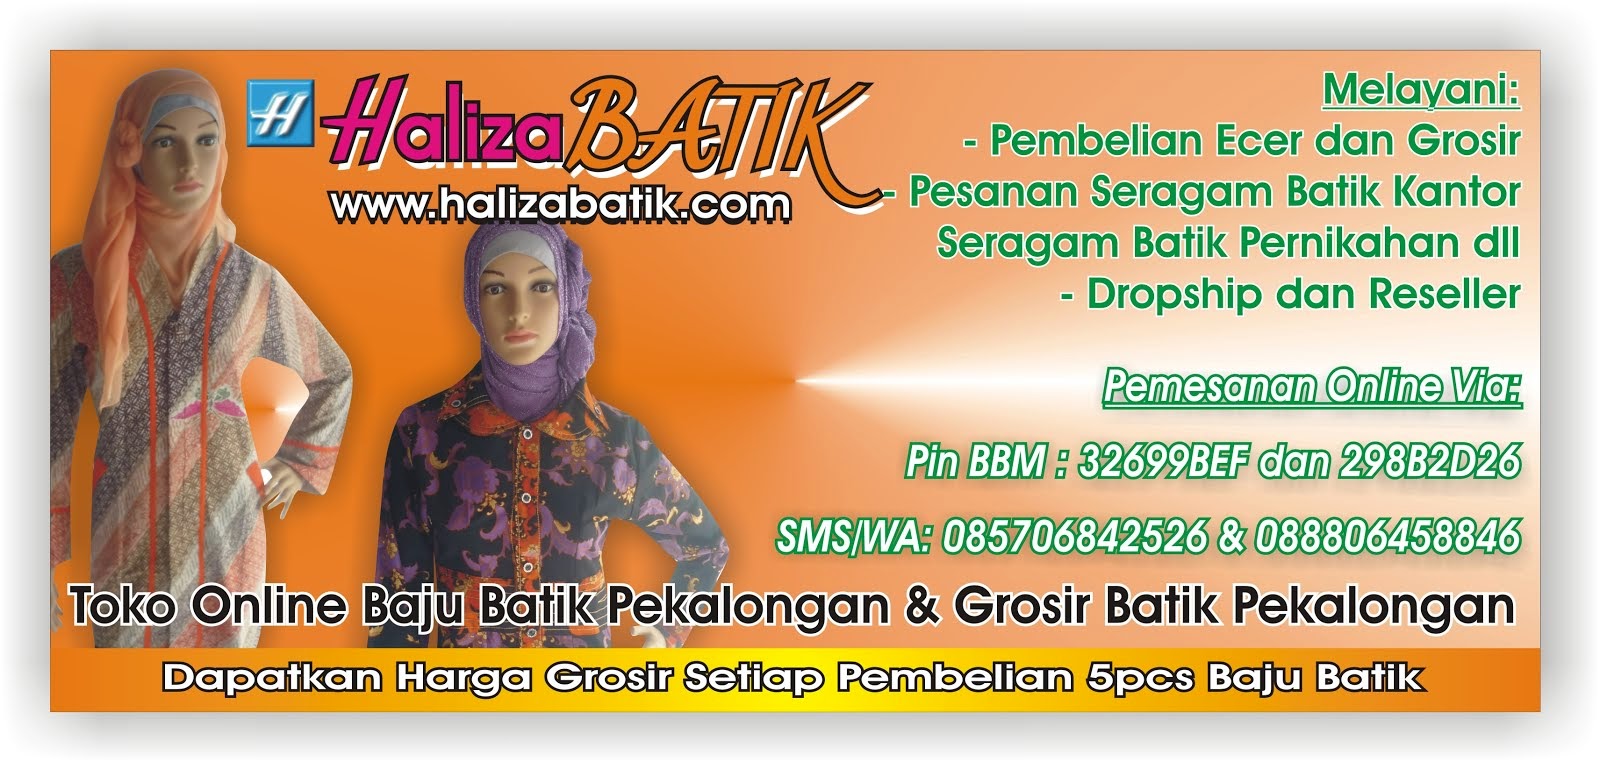 Grosir Batik Pekalongan, Model Batik Haliza, Baju Batik Haliza